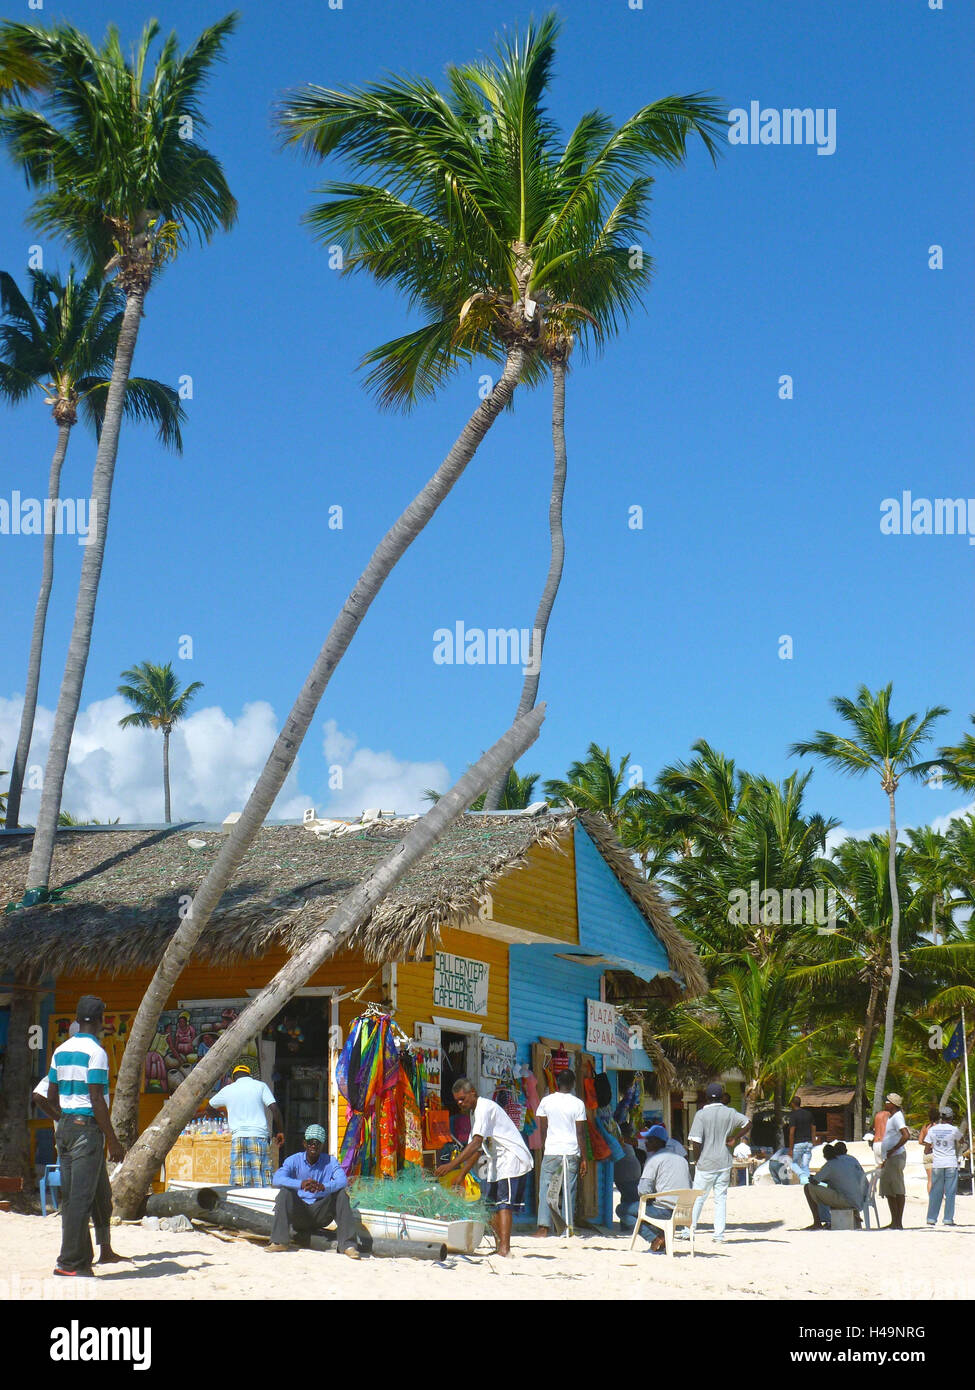 La República Dominicana, Punta Cana, Playa Bávaro, tienda de souvenir en cucharada Cortecito, palm beach, pescador y vendedor, Foto de stock